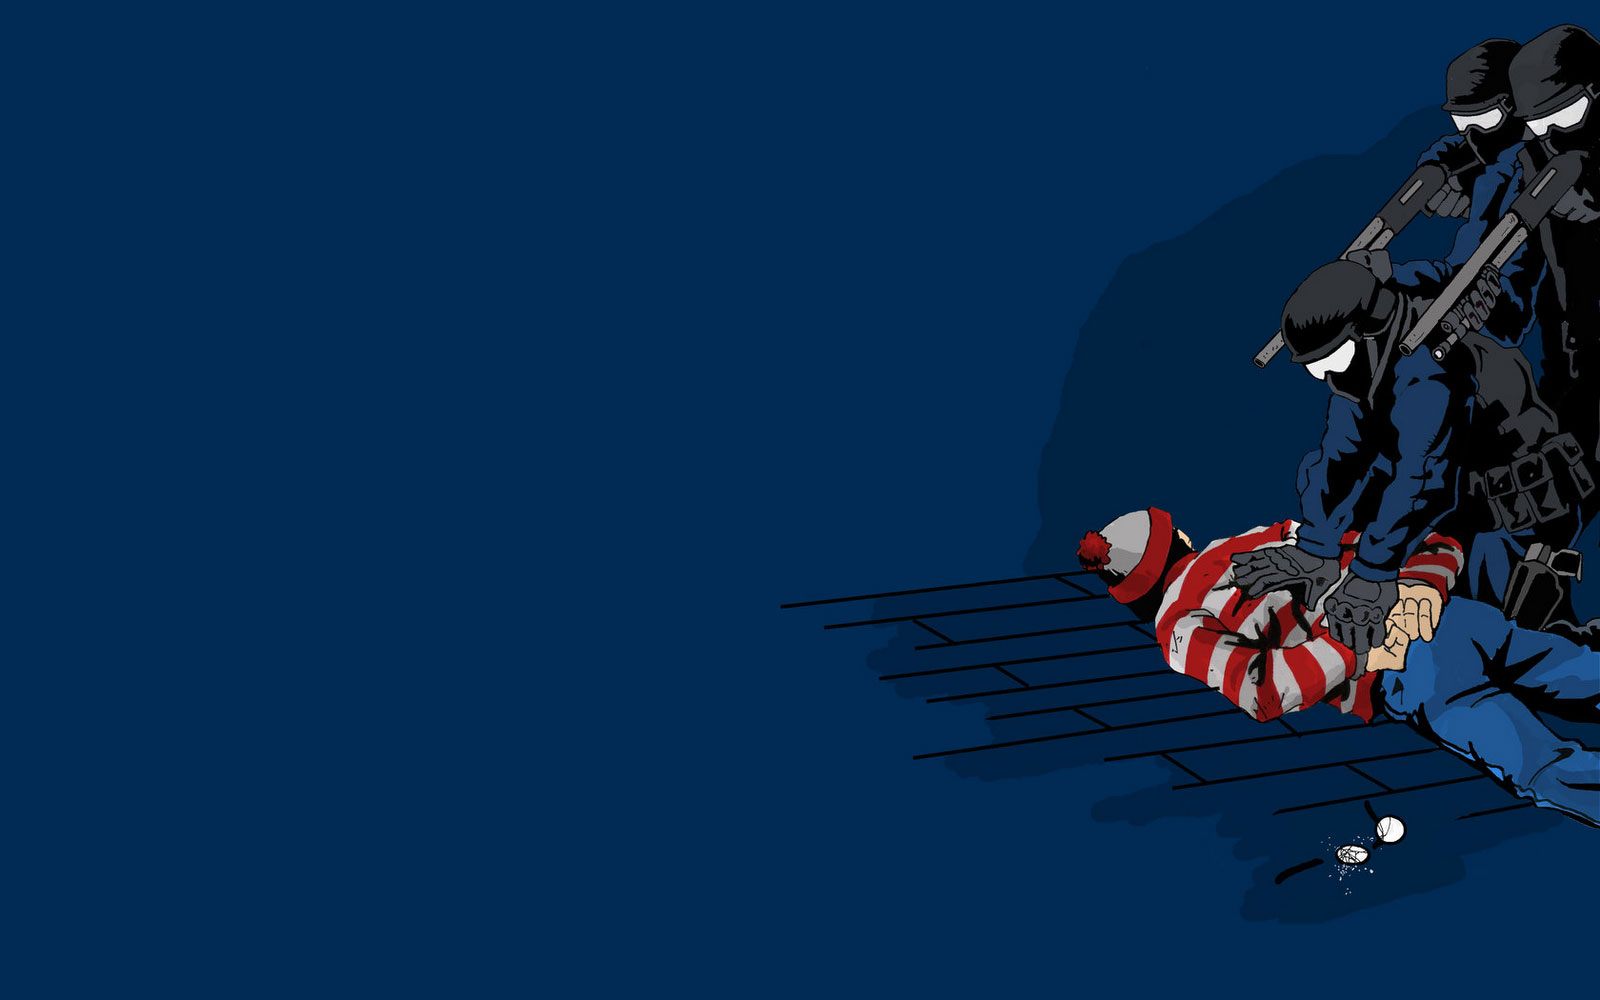 Word On The Street Is That Waldo Wears Stripes To Break Up